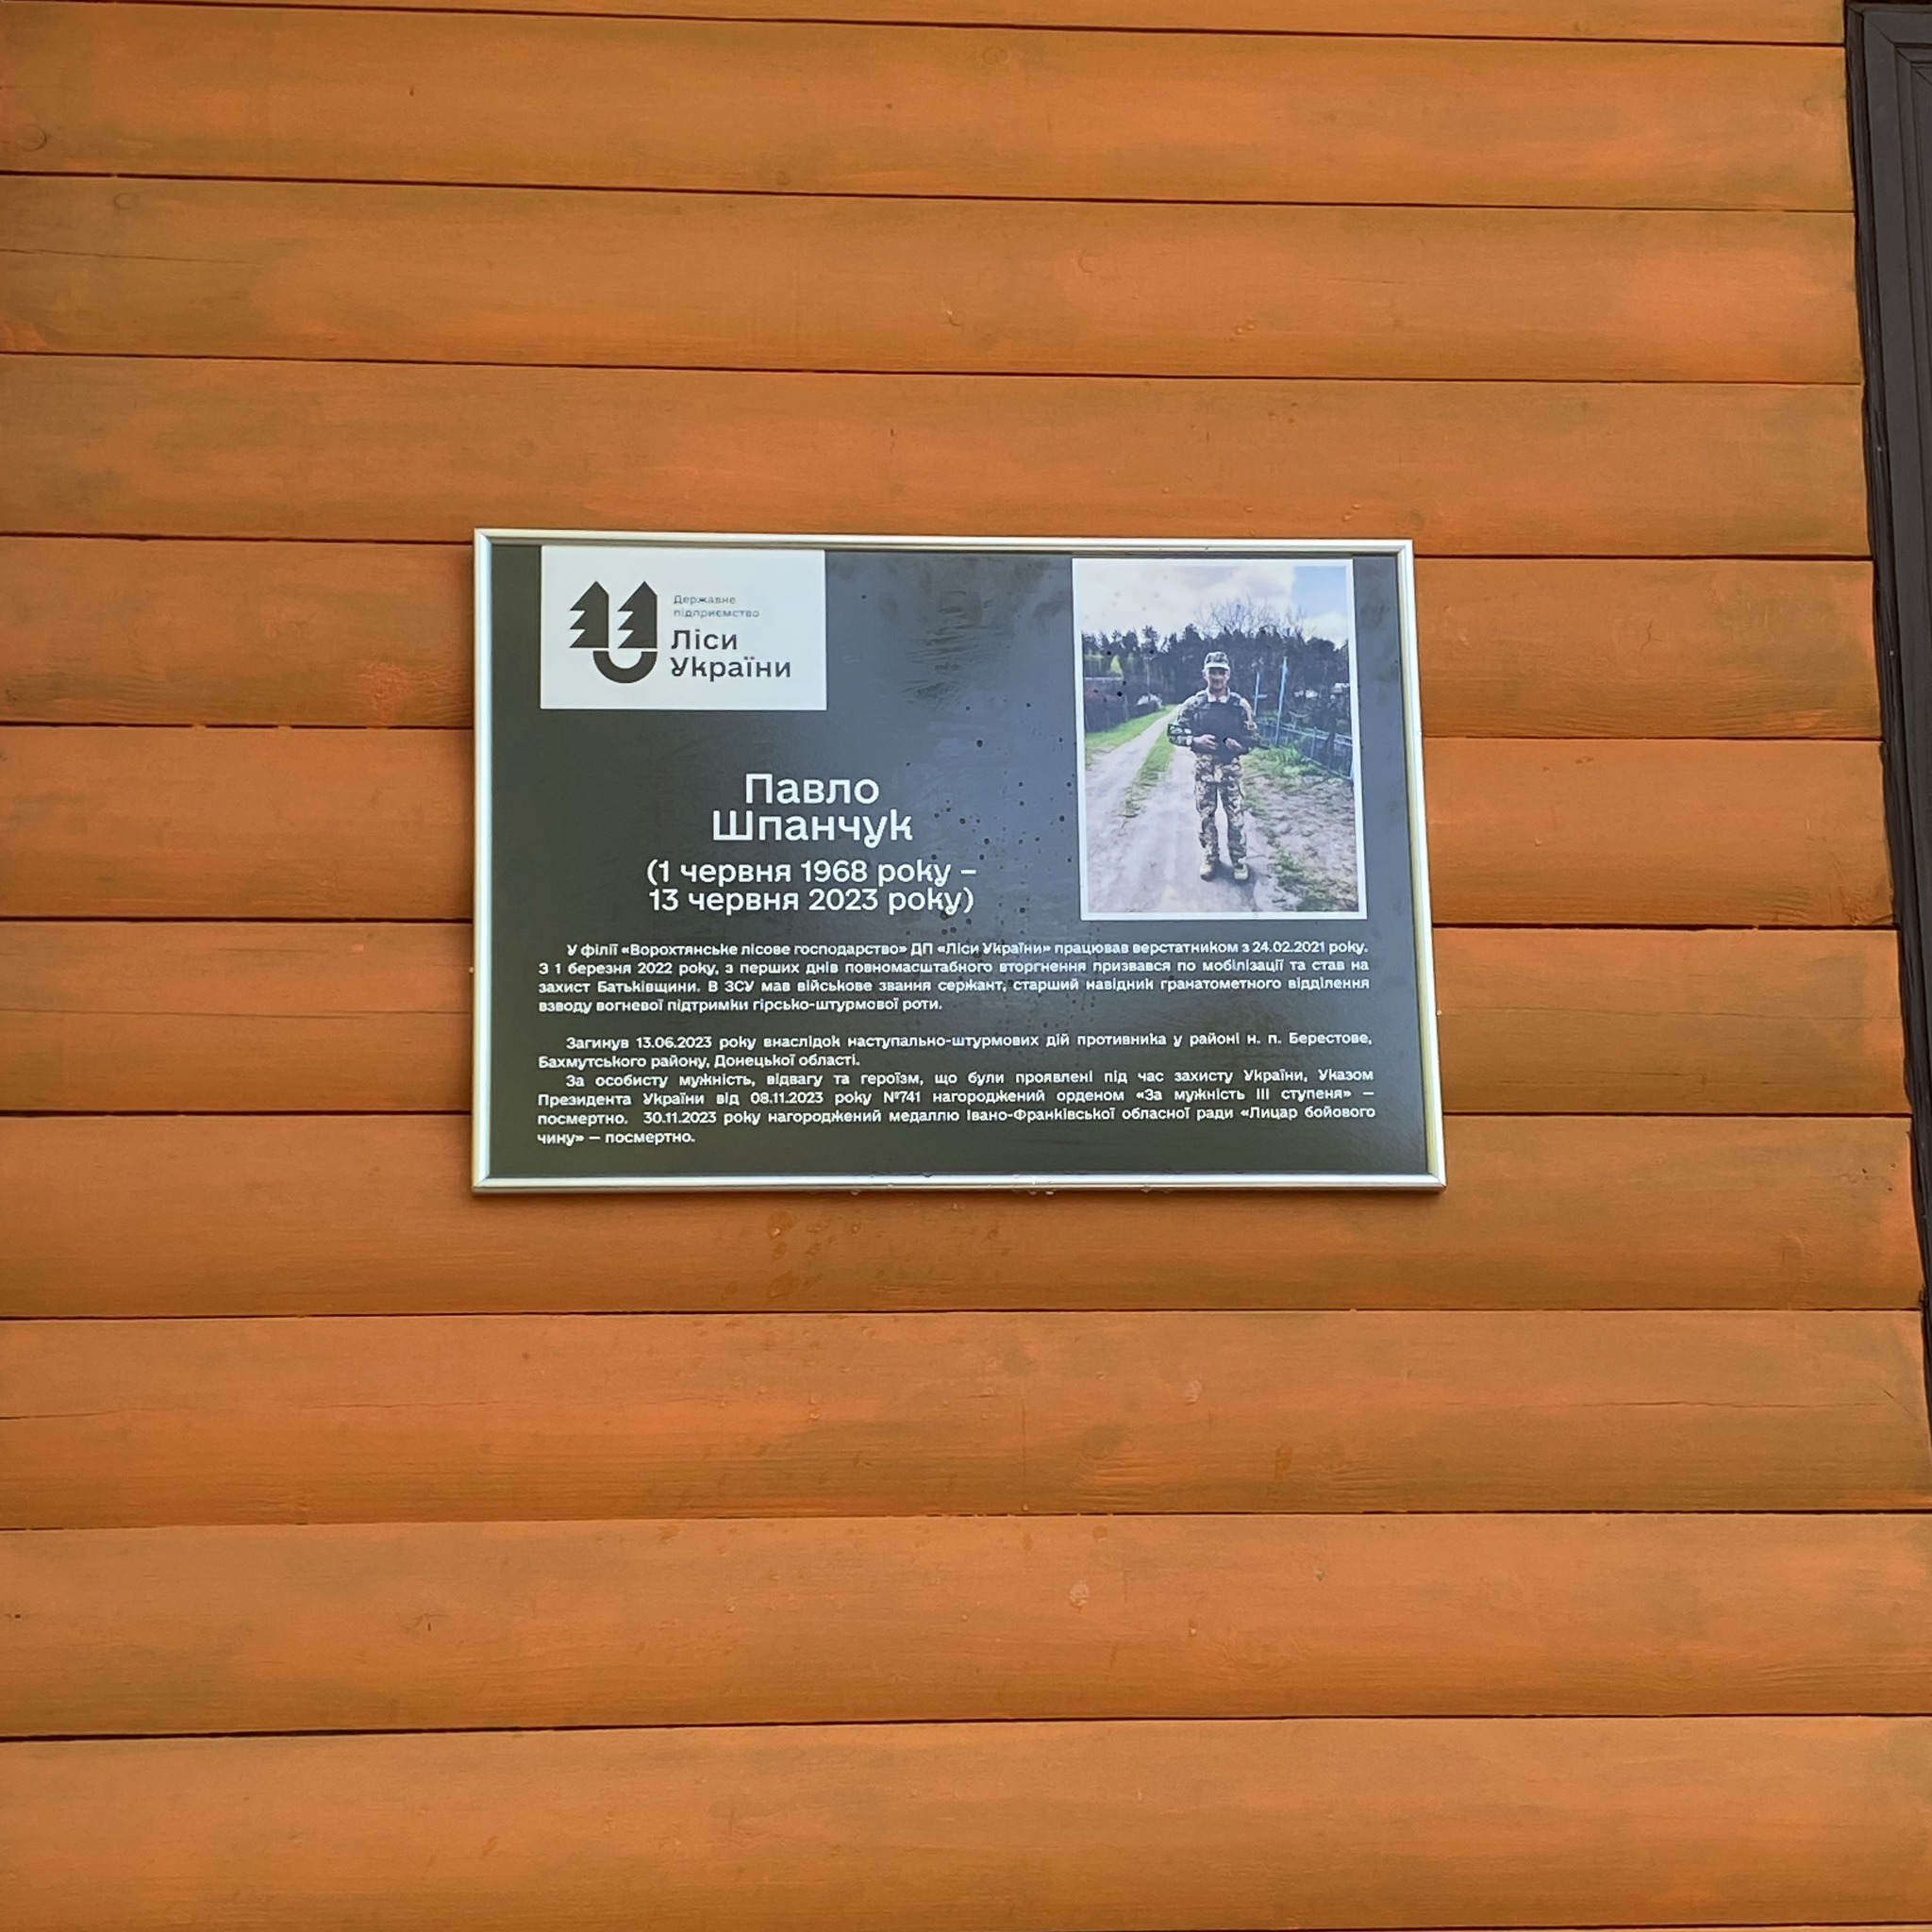 У Ворохті відкрили меморіальну дошку захиснику Павлу Шпанчуку (ФОТО)